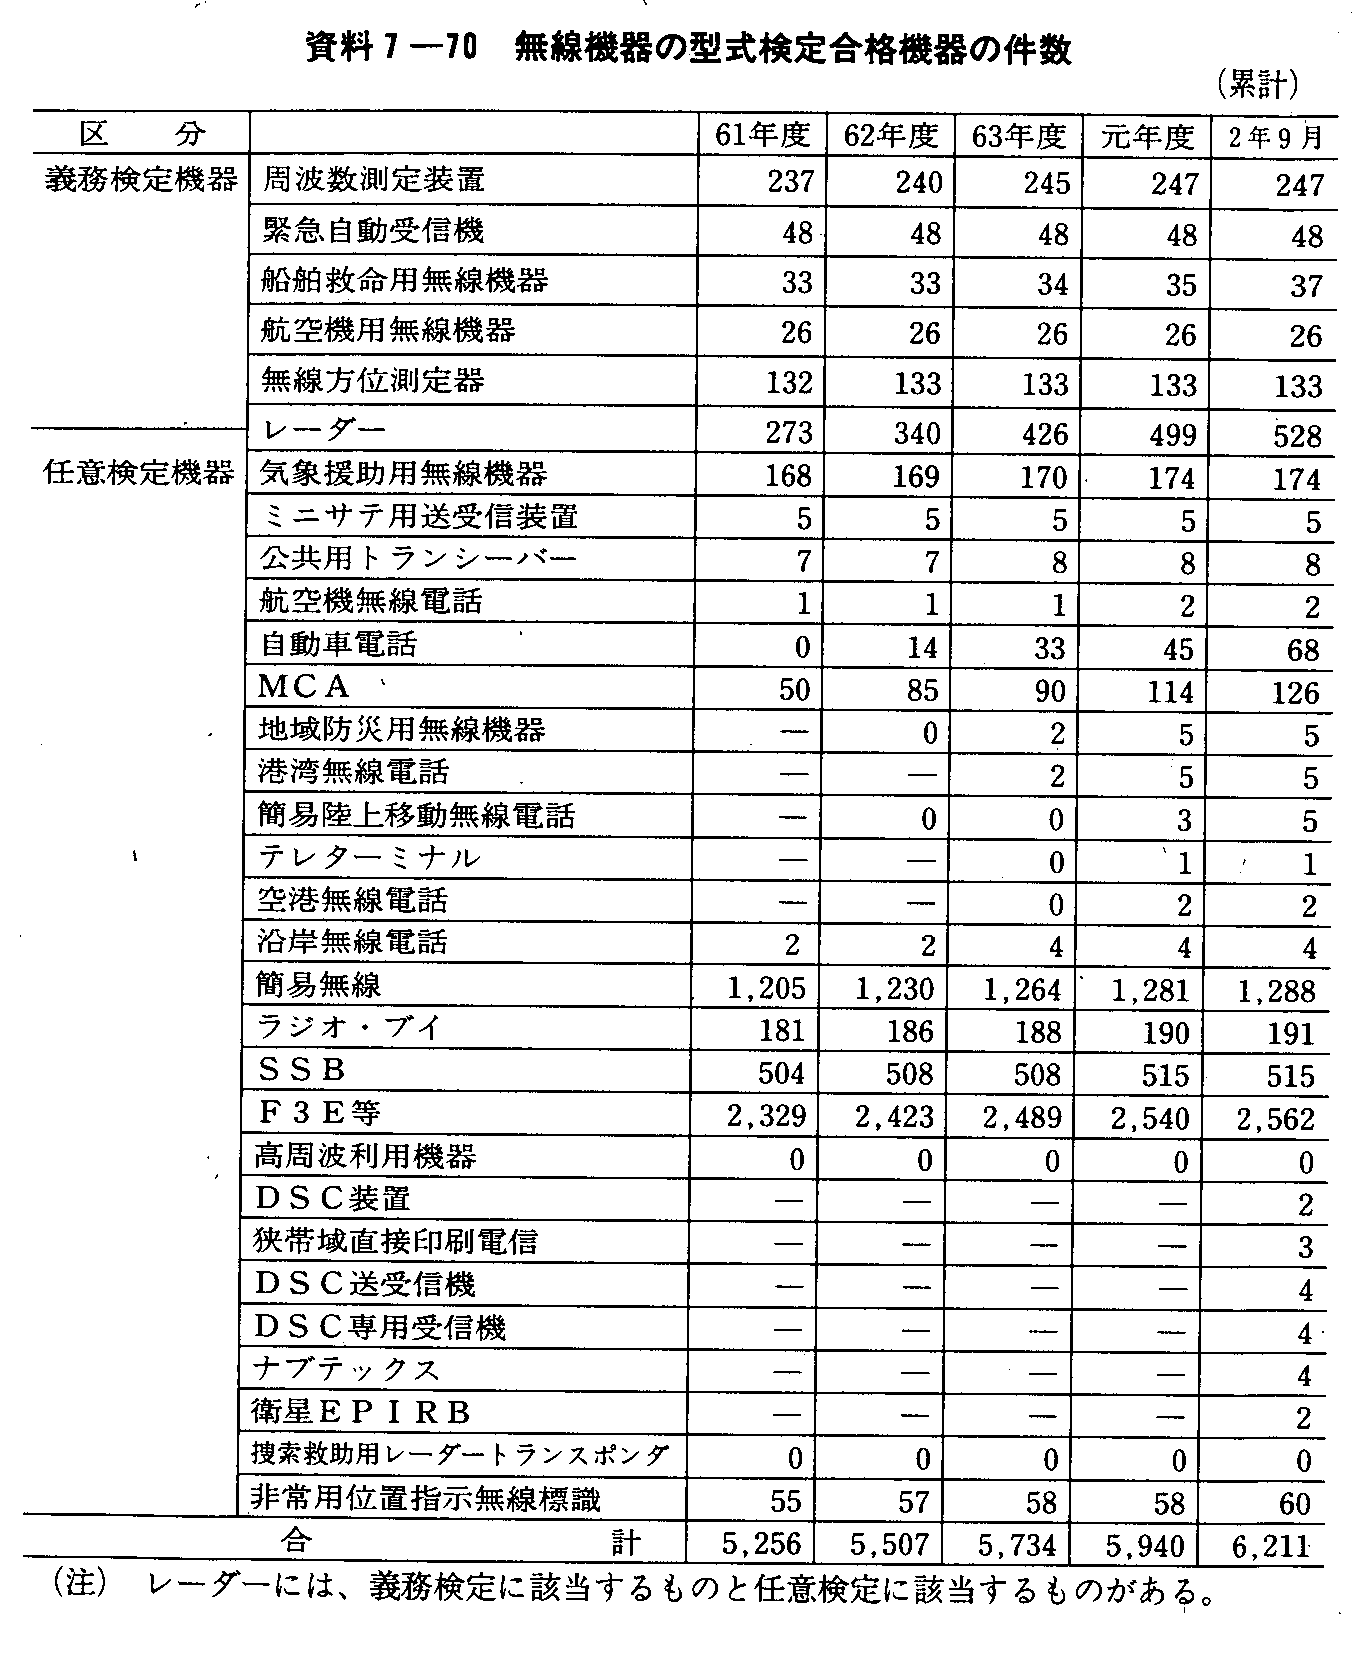 資料7-10 無線機器の型式検定合格機器の件数(累計)